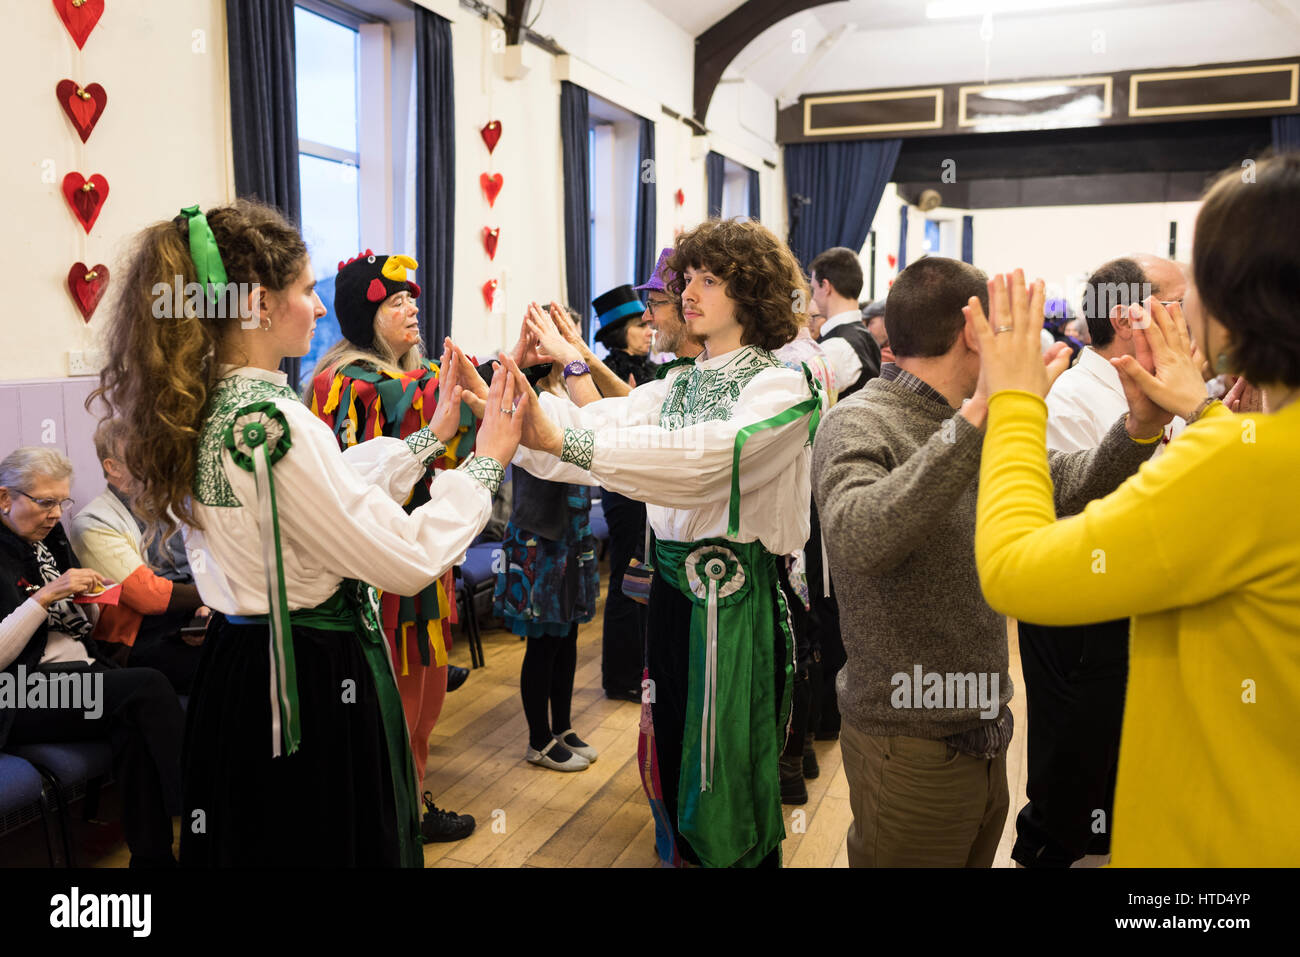 Danseurs dans assored de costumes à la réception de mariage d'un ceilidh/Morris dancing couple Banque D'Images